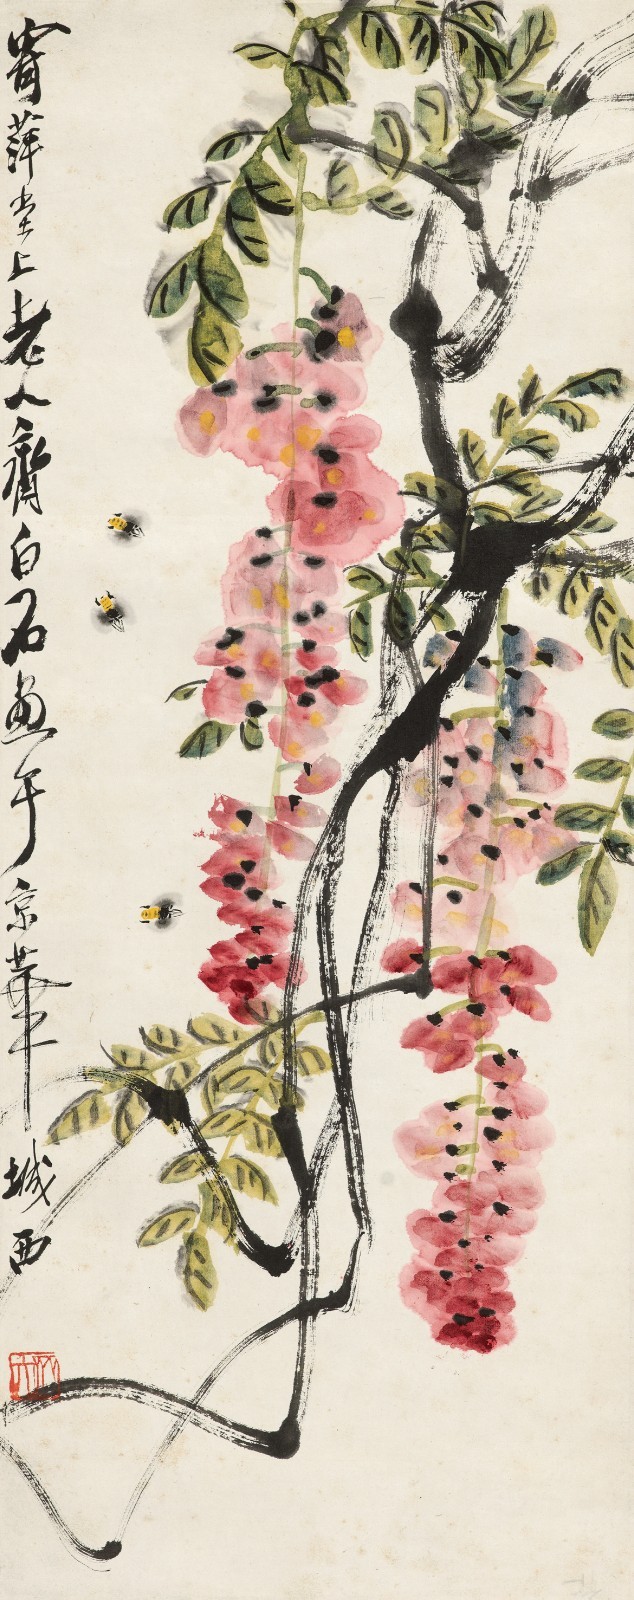 齐白石(1864-1957)紫藤蜜蜂图设色纸本  立轴